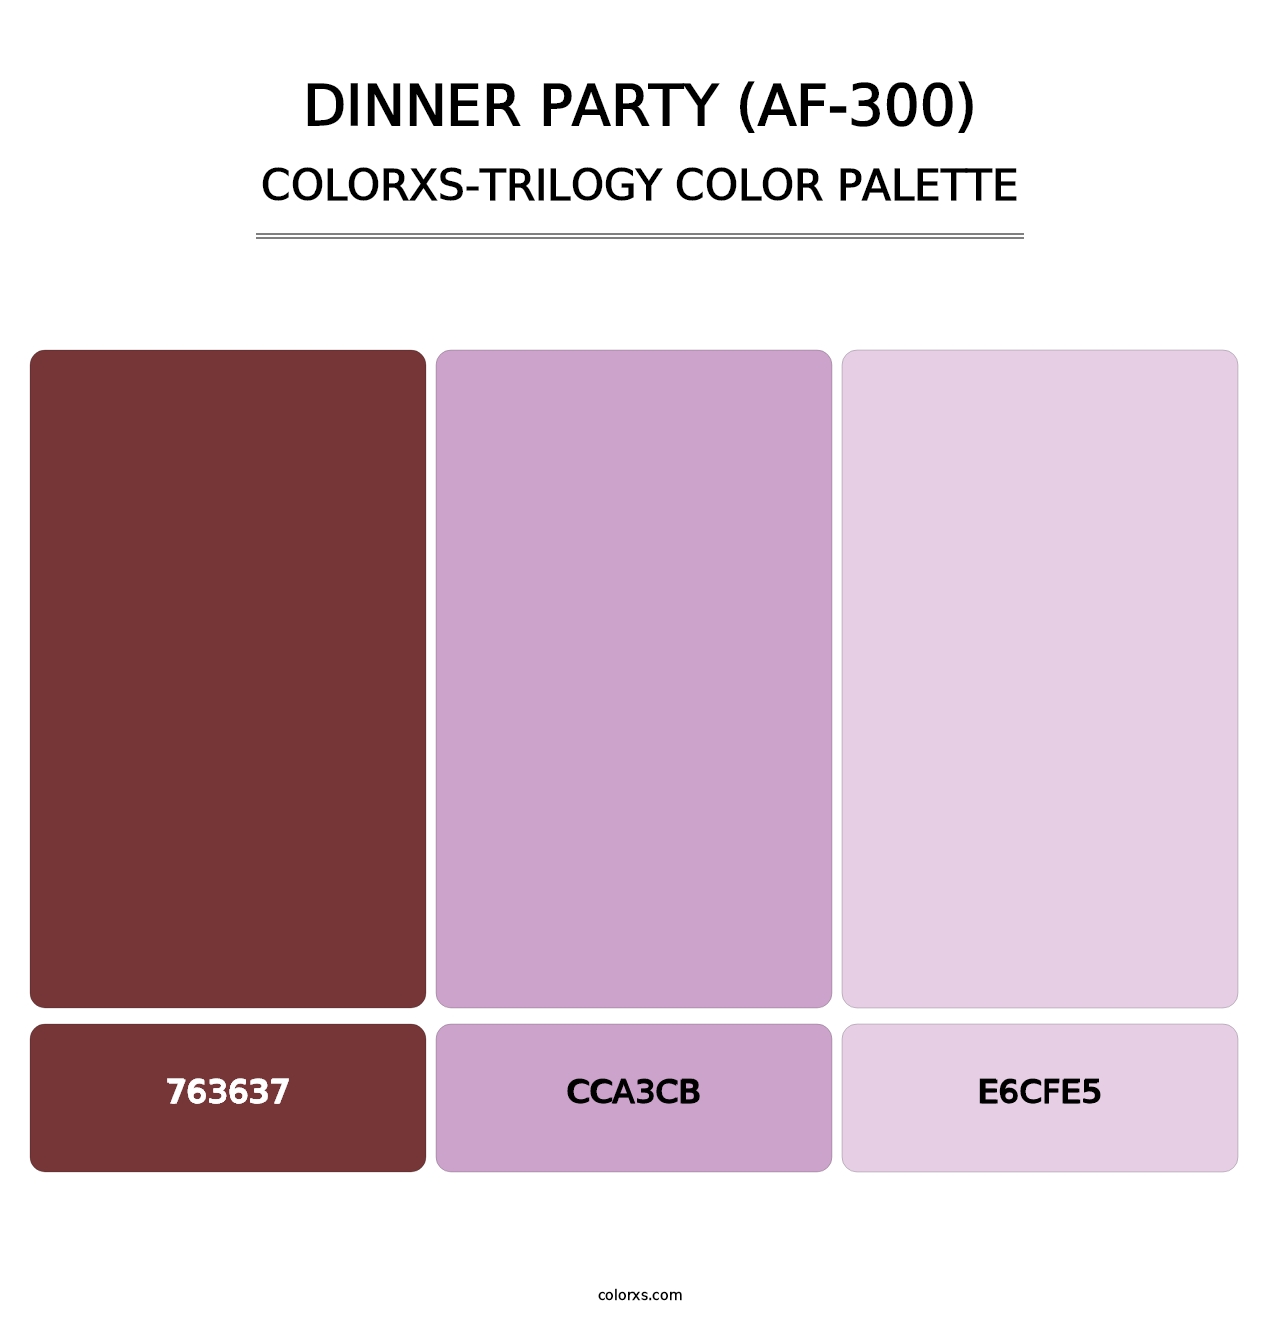 Dinner Party (AF-300) - Colorxs Trilogy Palette